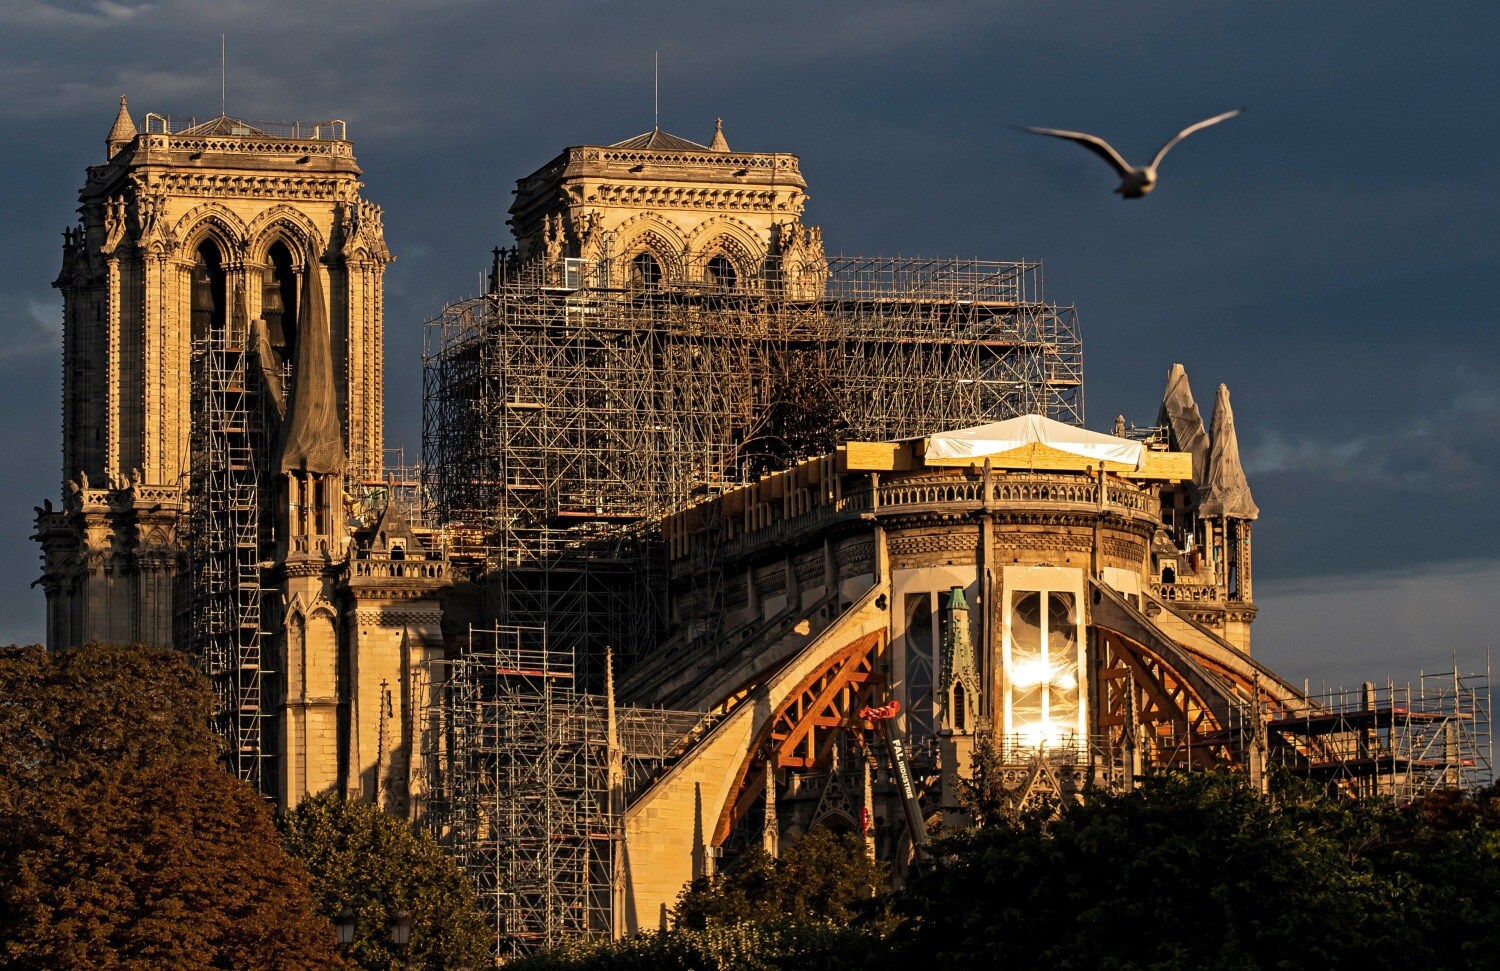 Vista de la fachada en obras de la catedral de Notre Dame en París, durante el amanecer, en Francia. 